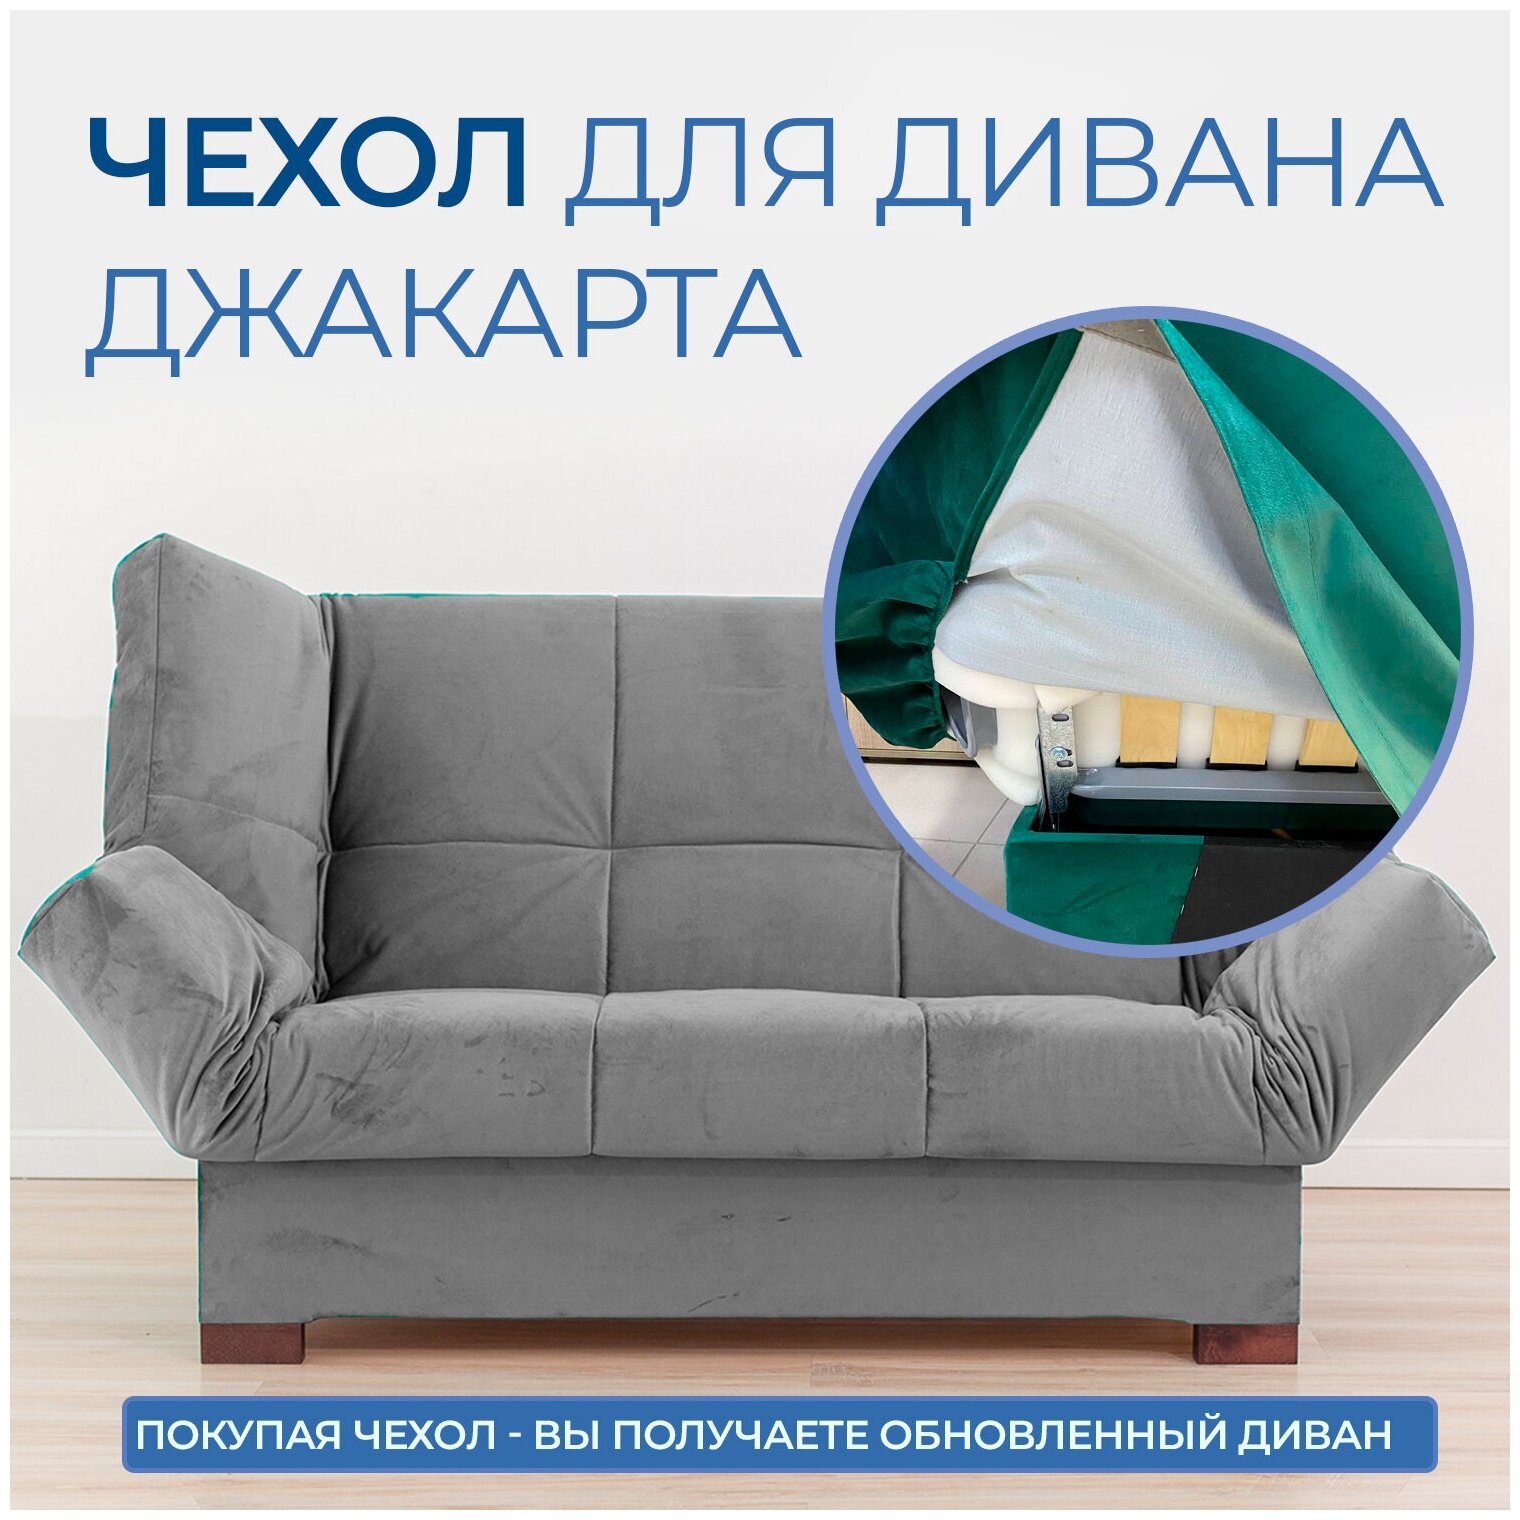 Чехол на прямой диван кровать Джакарта, механизм клик кляк, книжка, 205х135 см, серый